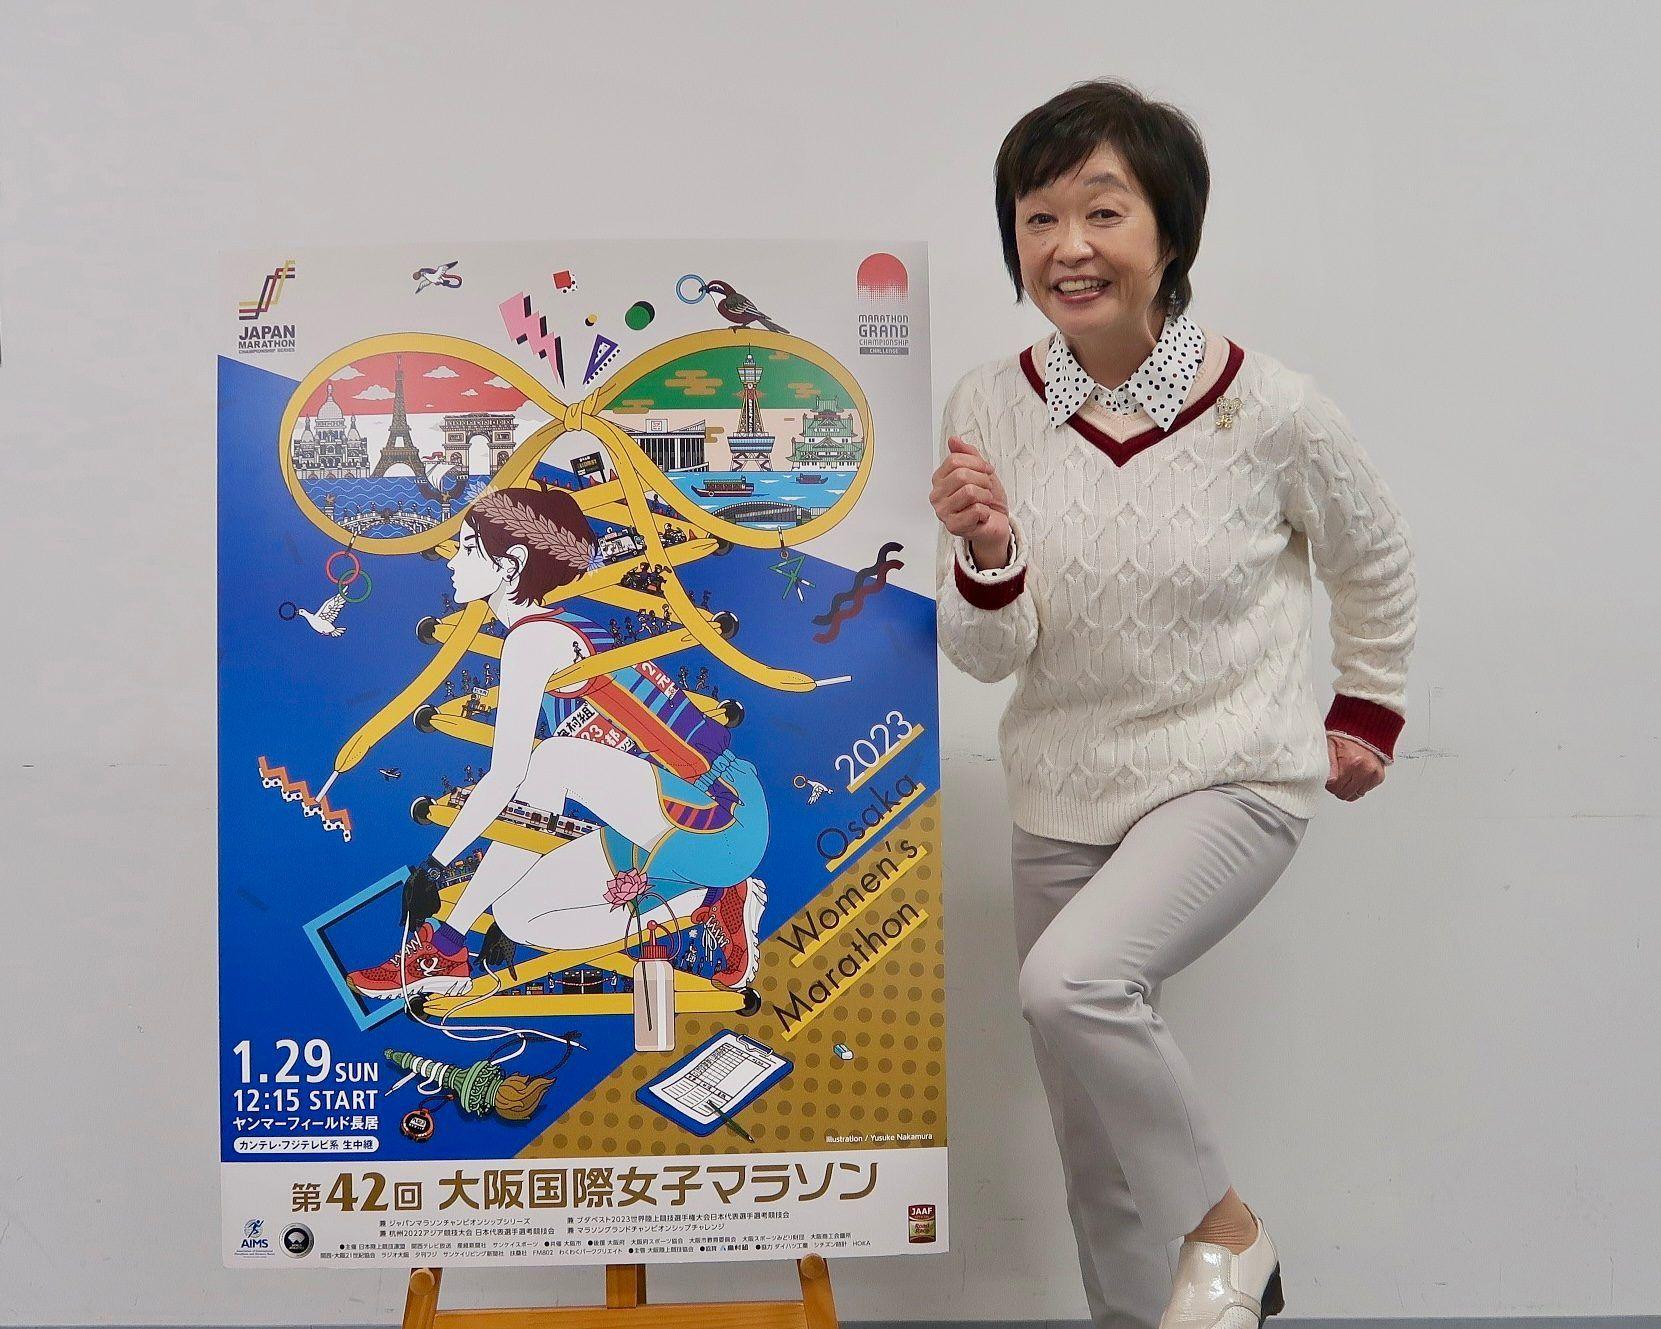 増田明美が語る大阪国際女子マラソン「ピョンと飛躍して世界に向かえそうな顔ぶれ」_site_large